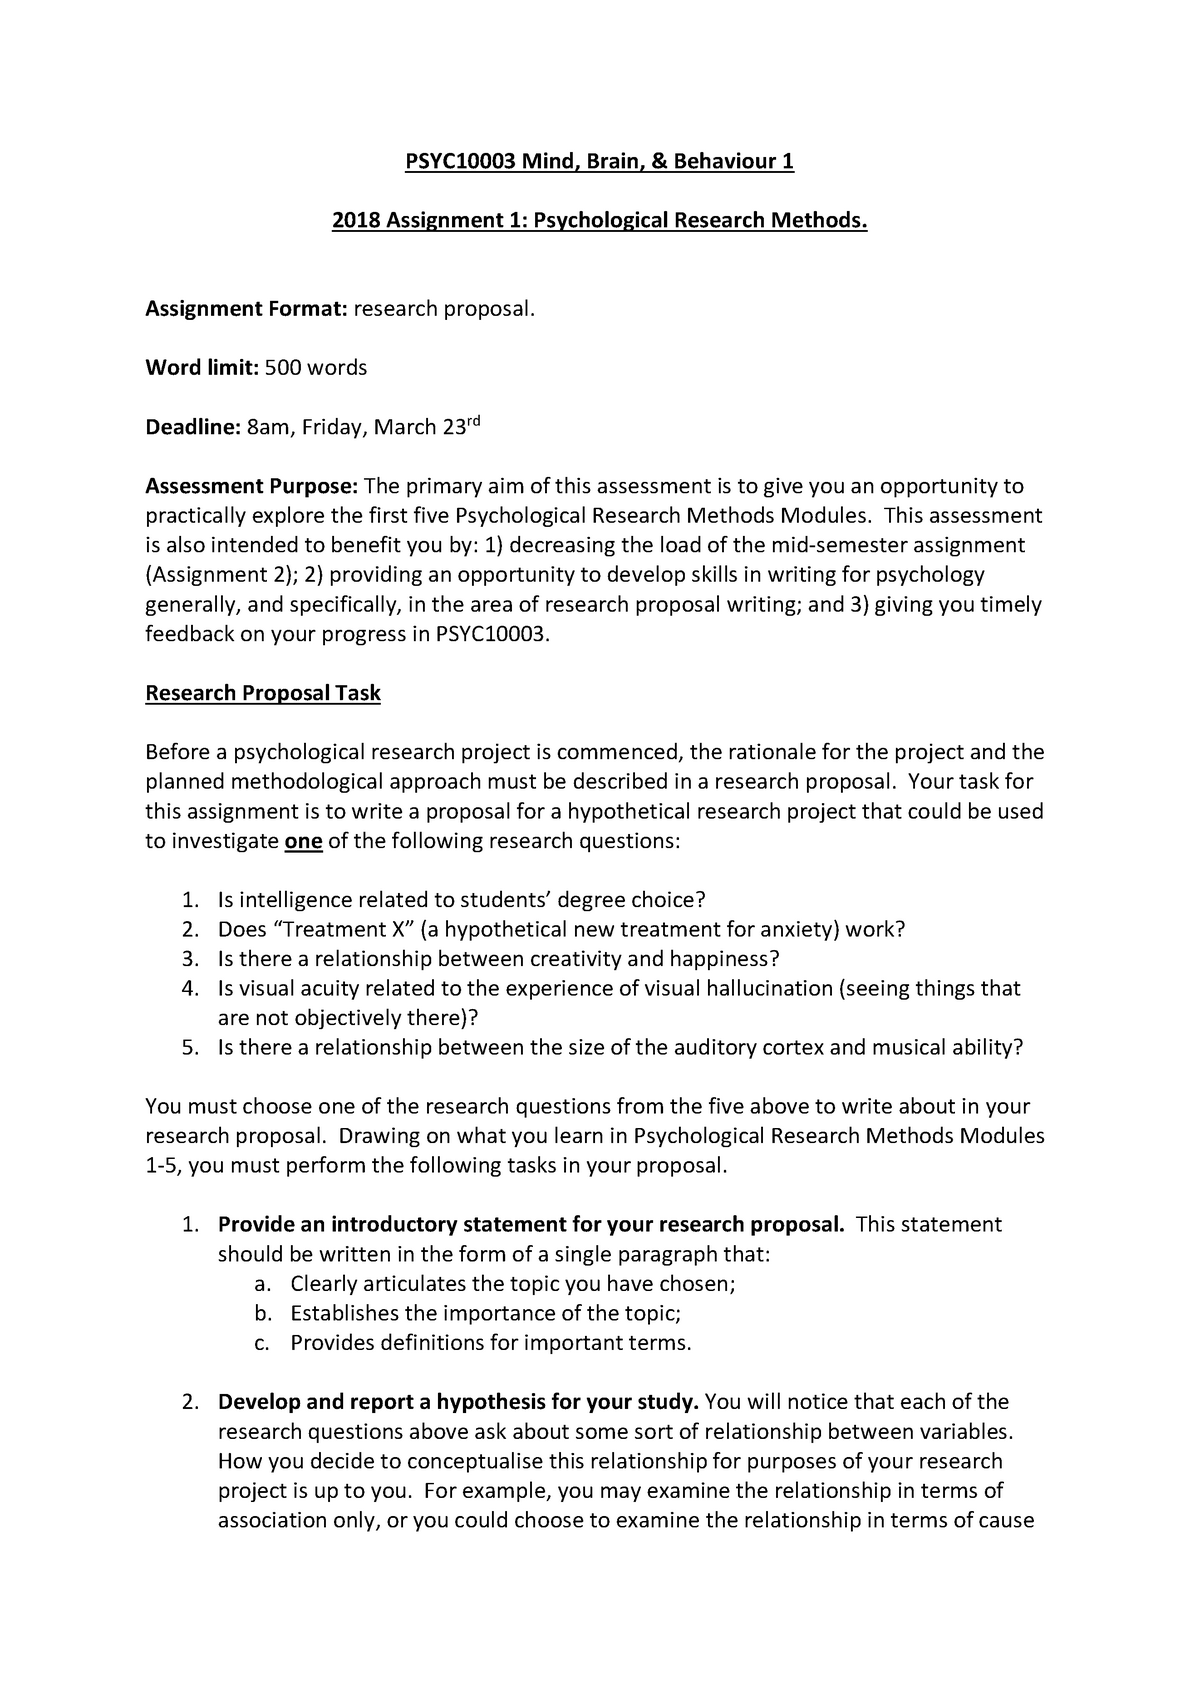 Assignment 25 Criteria - PSYC250003 - Mind, Brain & Behaviour 25